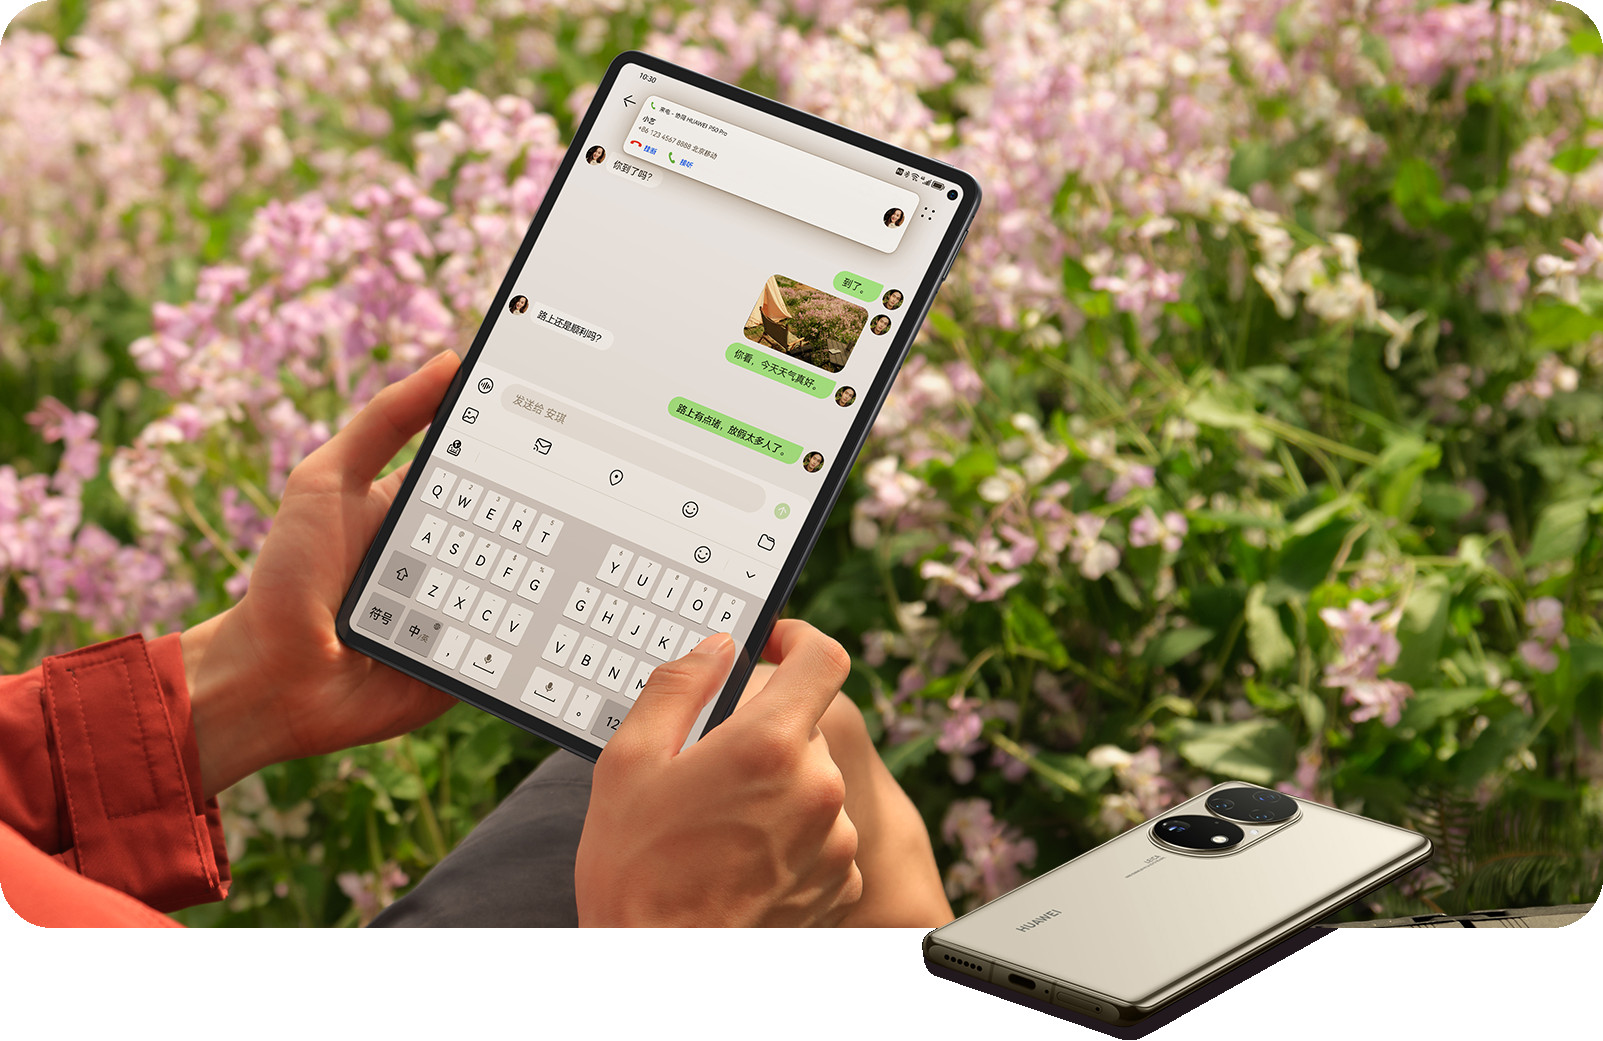 Segera Hadir Di Indonesia! Huawei Matepad Pro: Tablet Flagship Generasi Terbaru